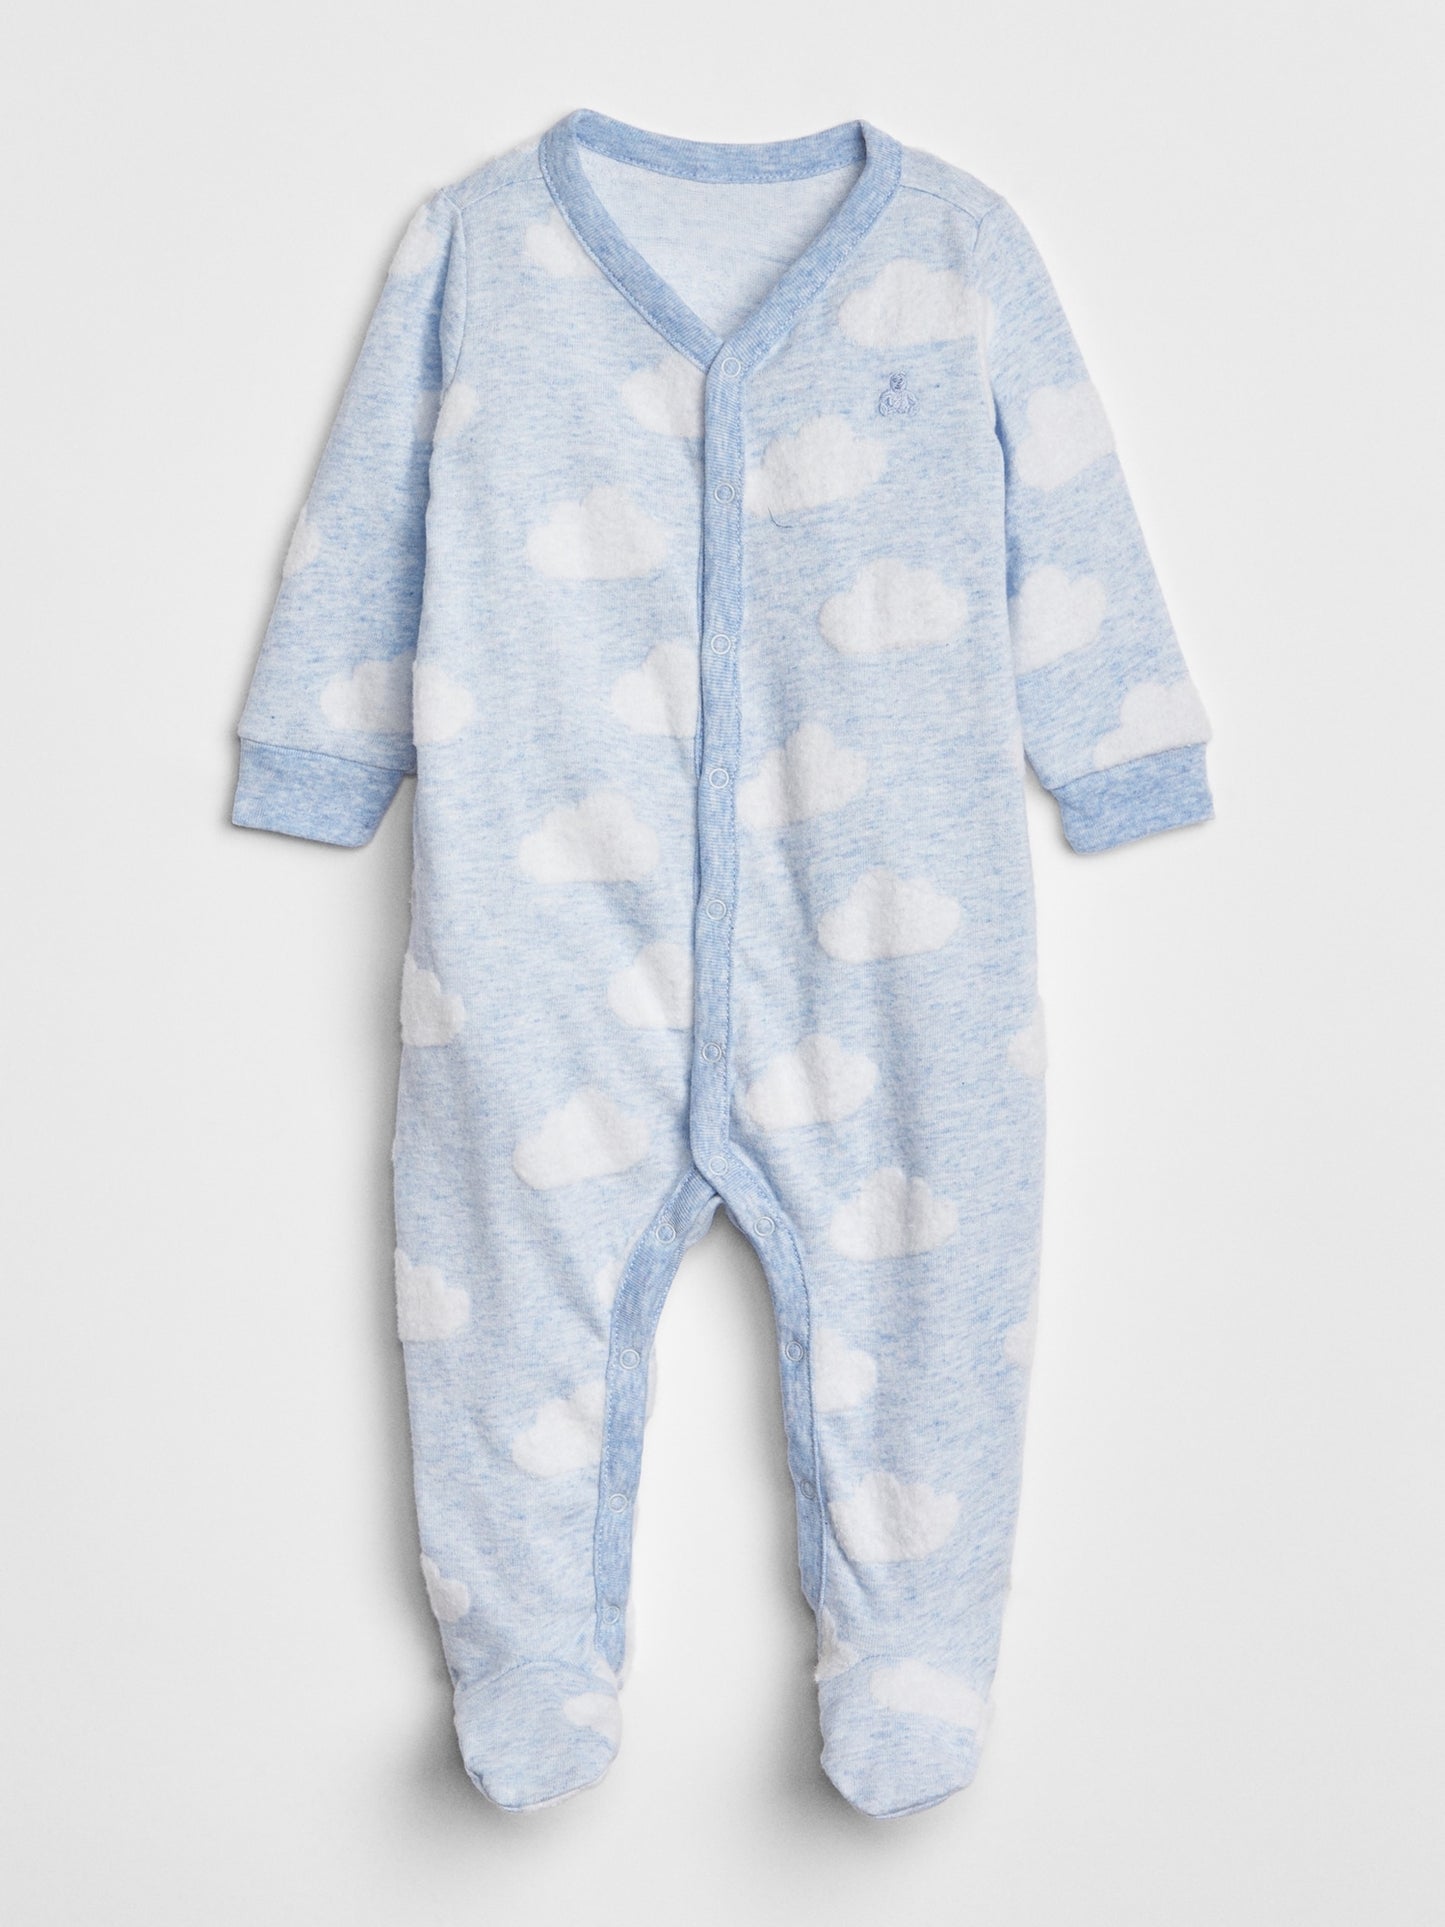 Body de una pieza con pies y estampado favorito del primer bebé de Gap Onepiece - Azul Heather